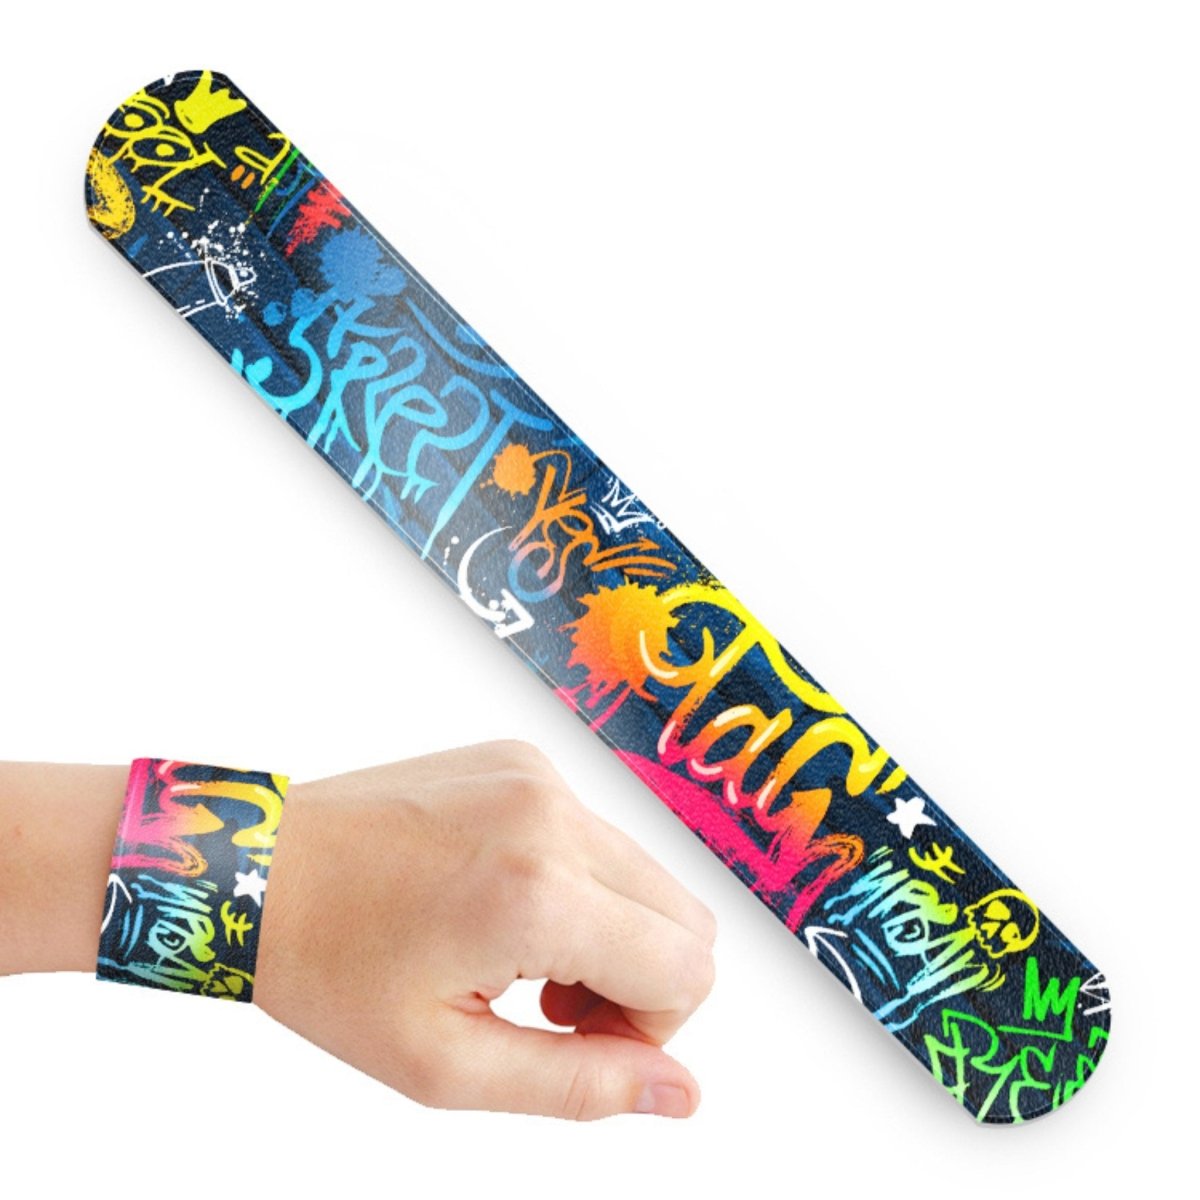 Graffiti Slap Bracelet - Kids Party Craft